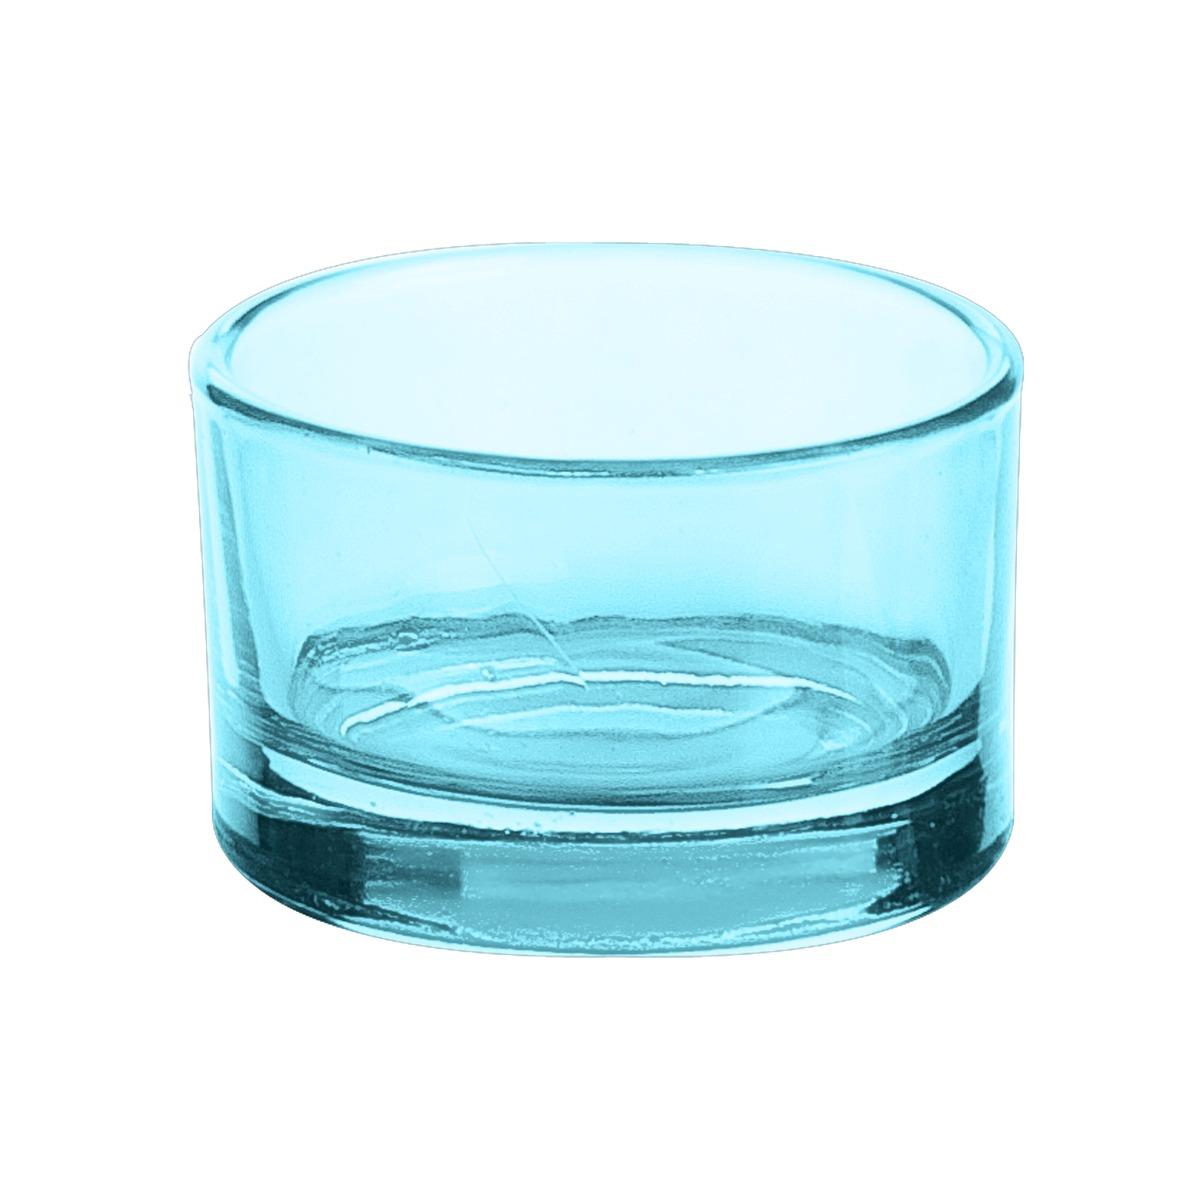 Photophore en verre - Diamètre 5 x H 3 cm - Bleu